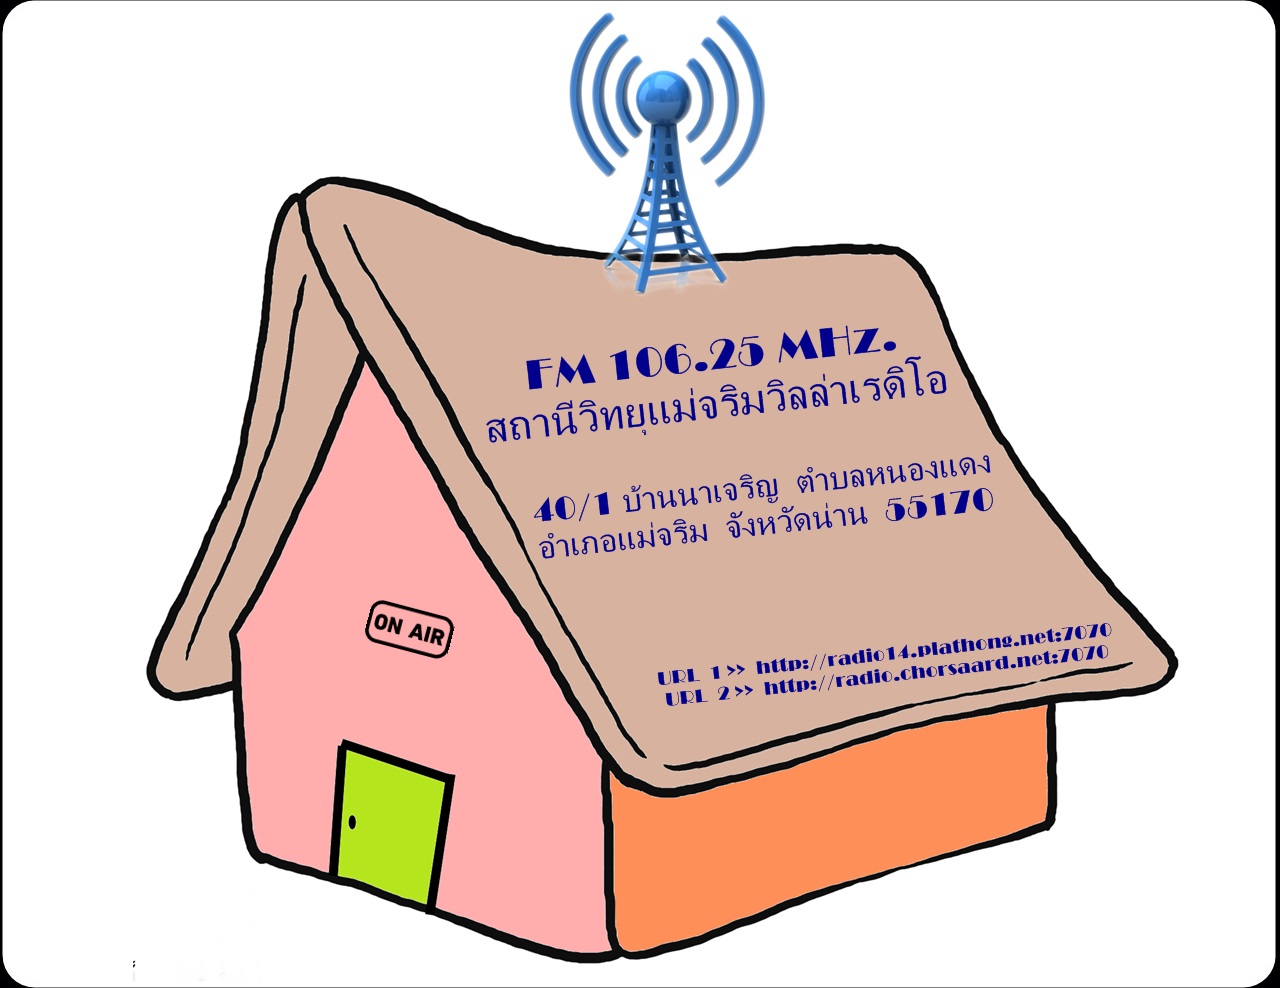 สถานีวิทยุแม่จริมวิลล่าเรดิโอ FM 106.25 MHz น่าน